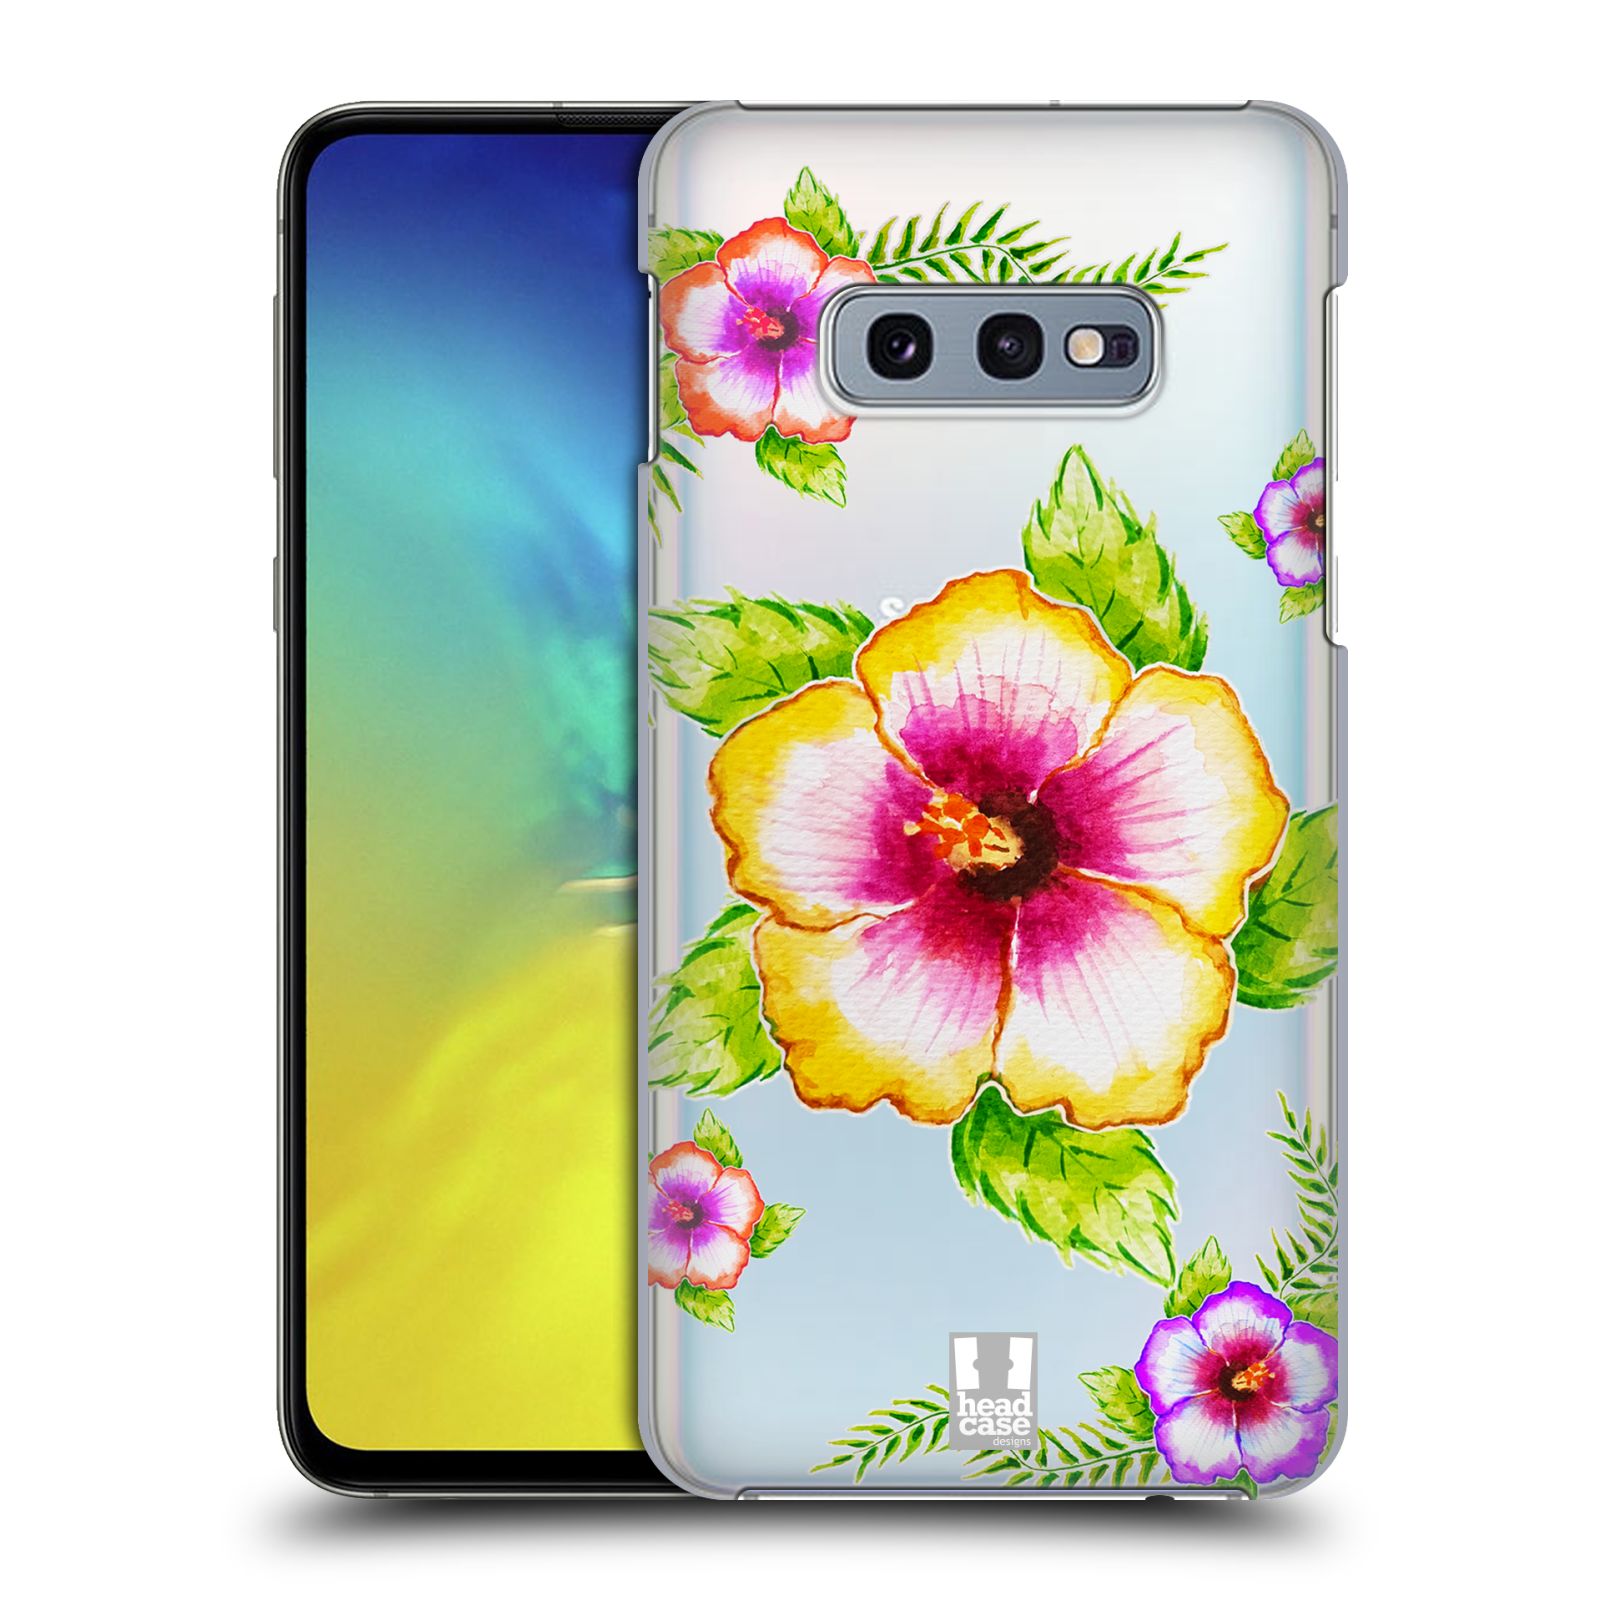 Pouzdro na mobil Samsung Galaxy S10e - HEAD CASE - Květina Ibišek vodní barvy